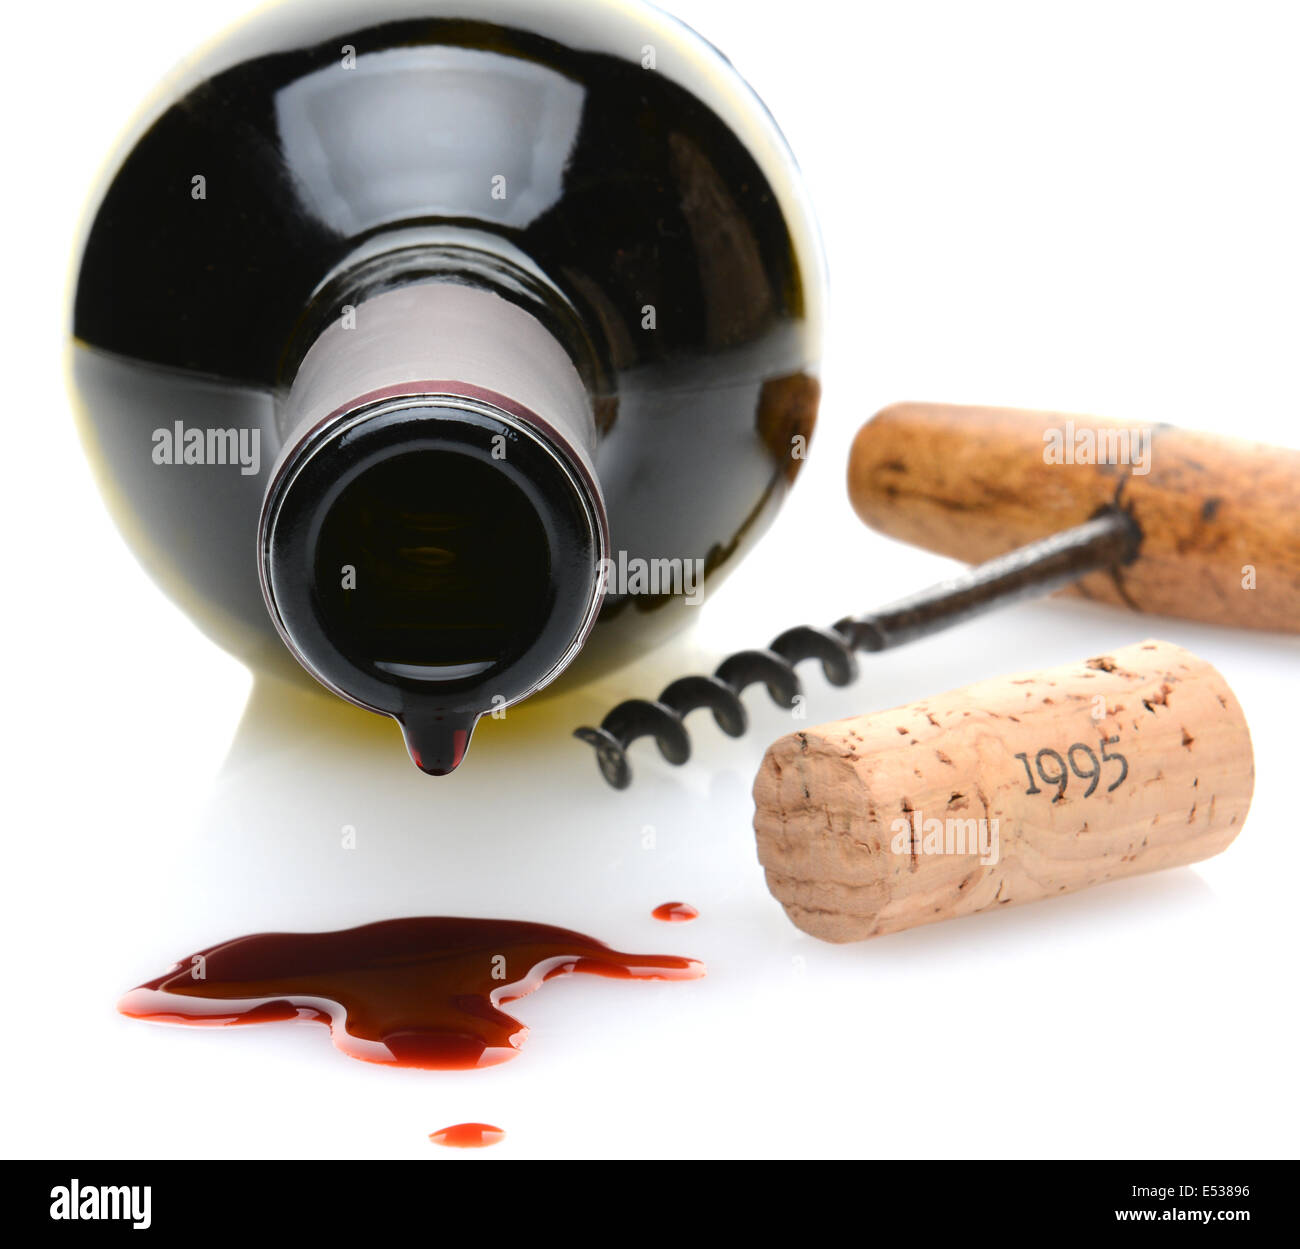 Primer plano de un vaso de vino tinto con una perfusión y vino derramado en el primer plano. Un corcho corcho y tornillo a un lado. Foto de stock